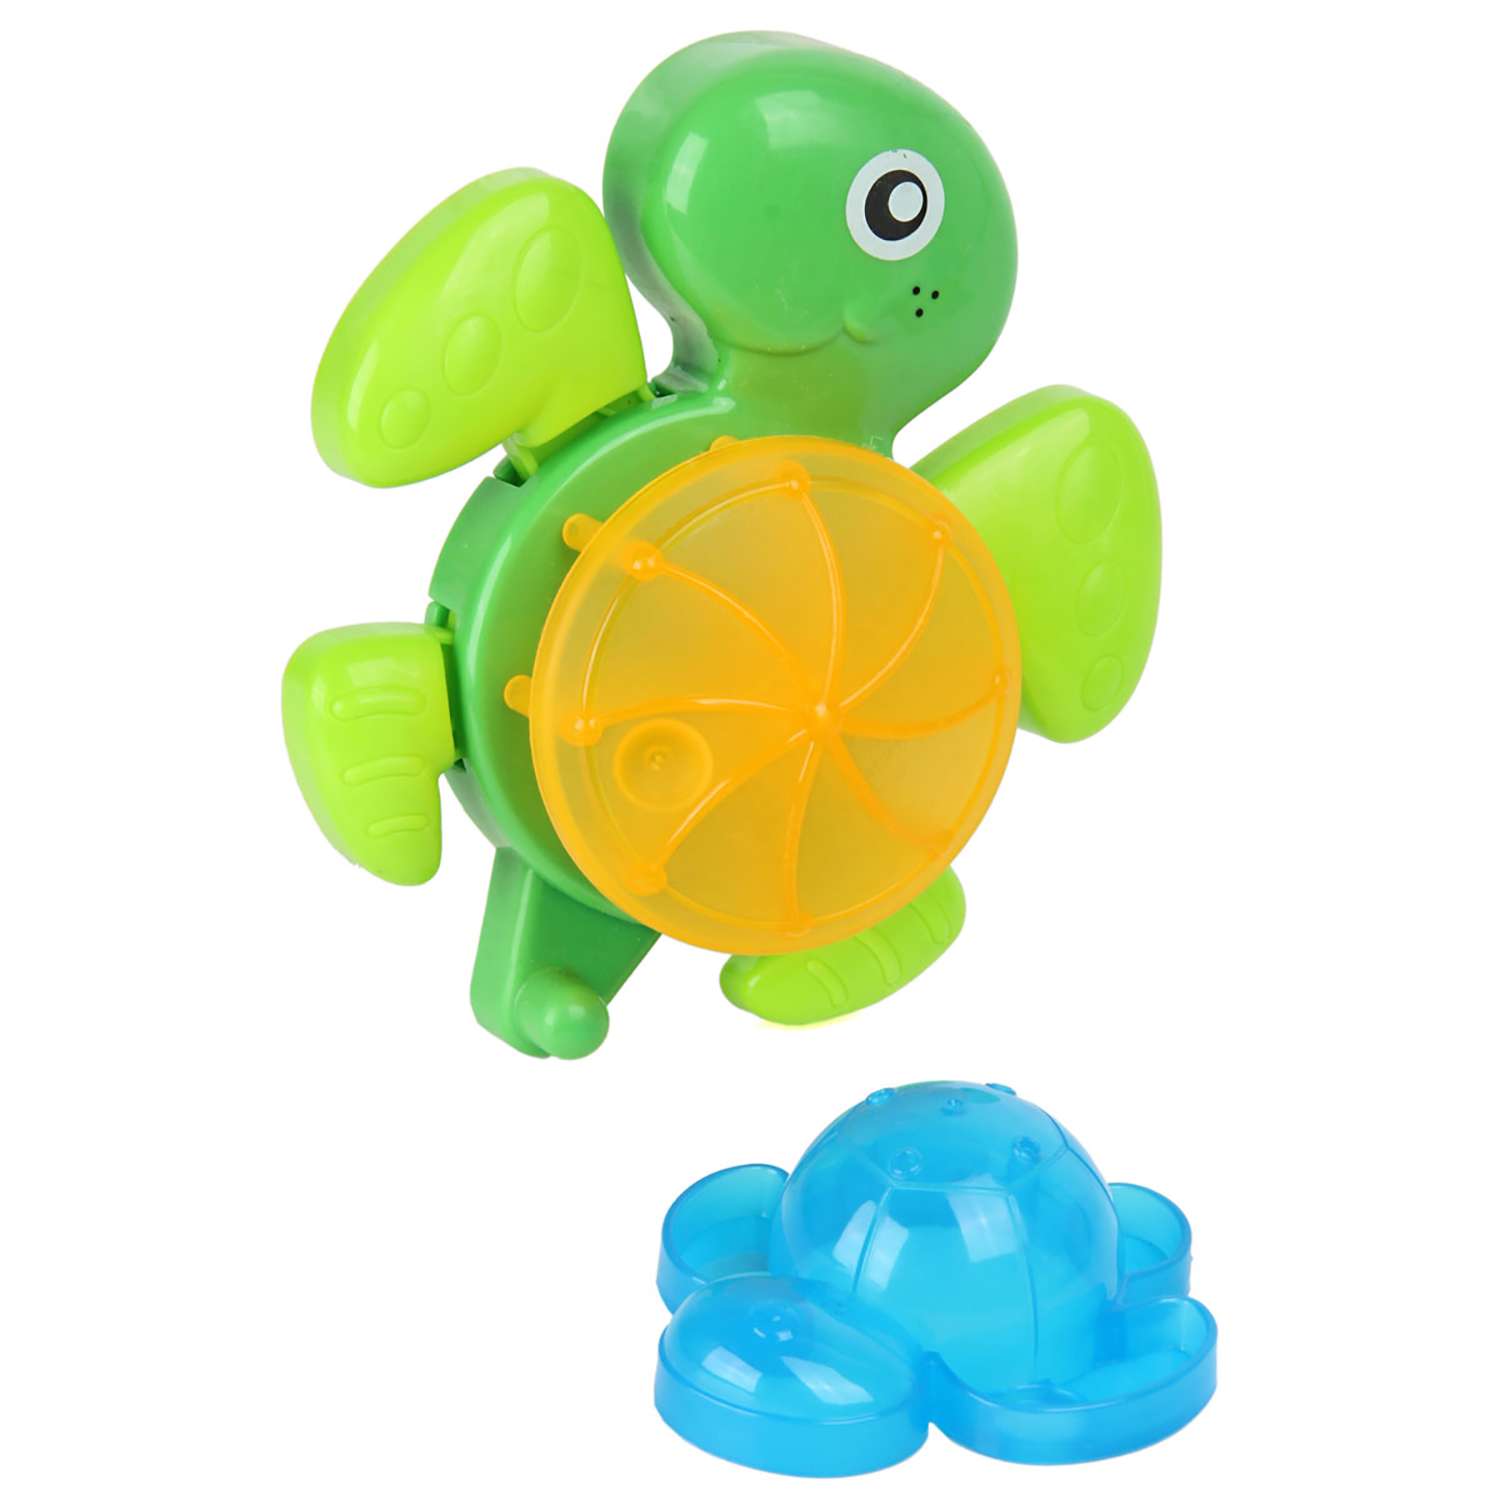 Игрушка для ванной Ути Пути Развивающие игрушки черепашка и формочка - фото 1